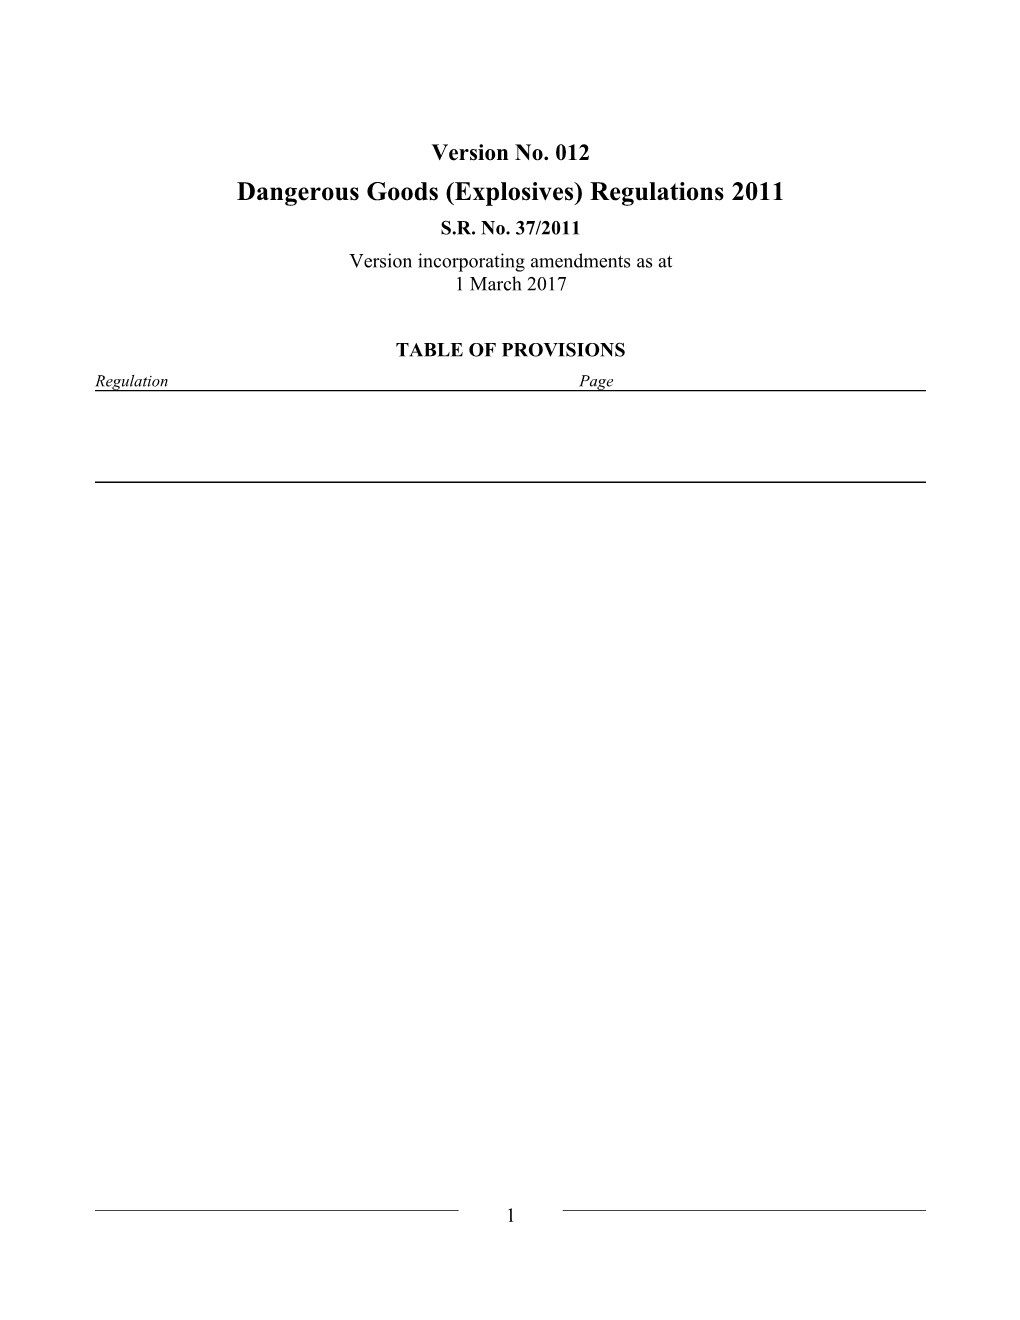 Dangerous Goods (Explosives) Regulations 2011